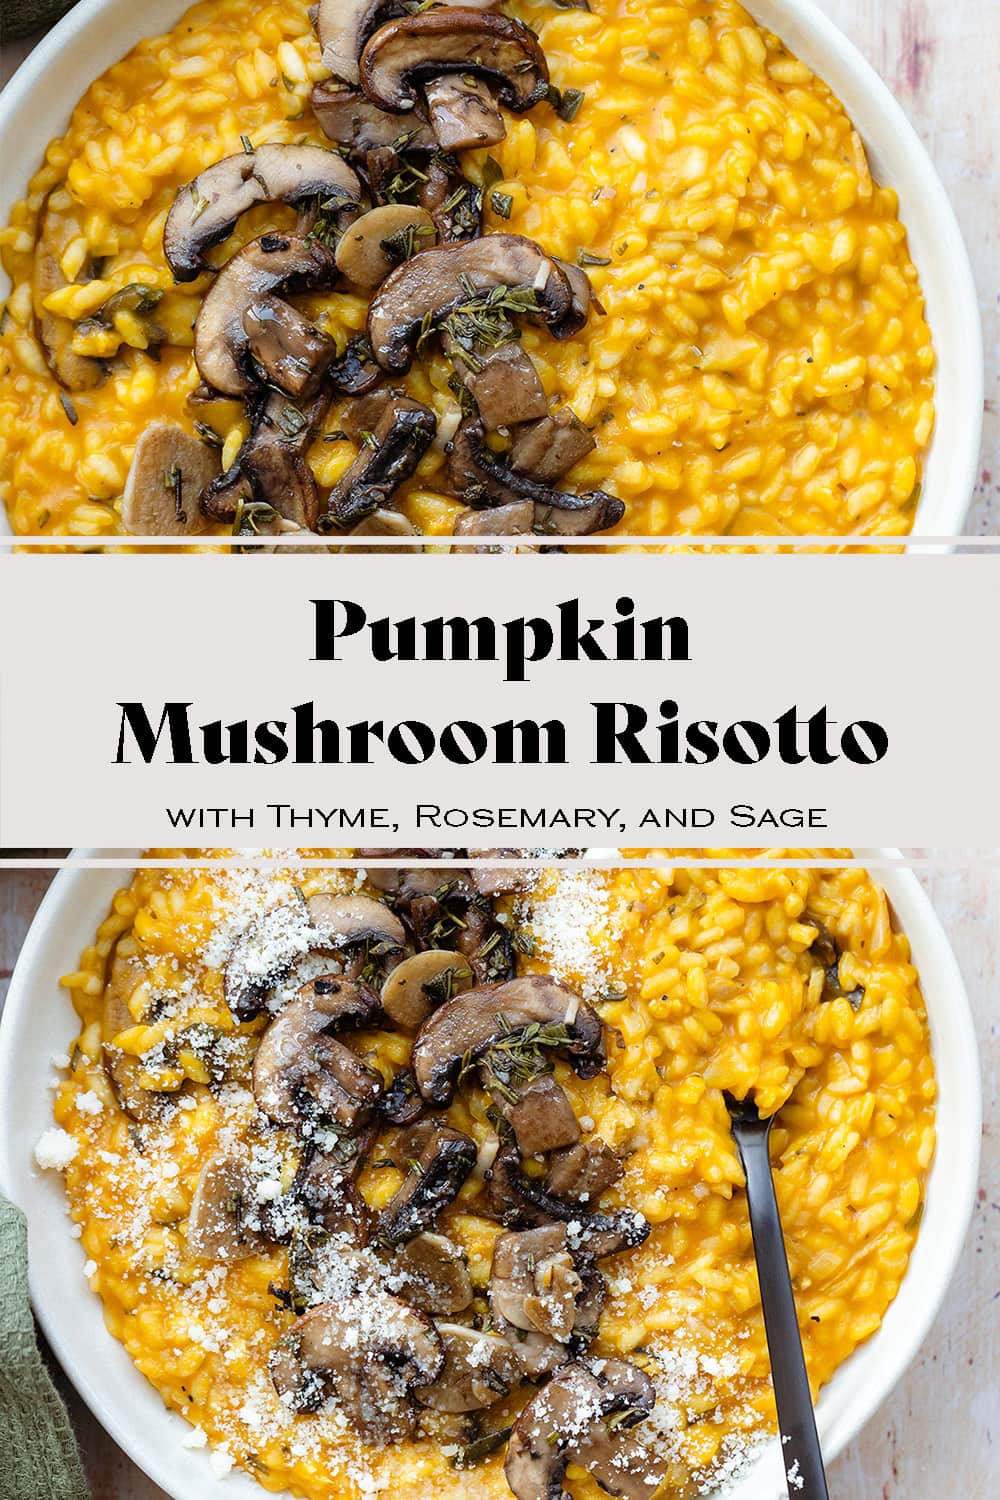 Pumpkin and Mushroom Risotto